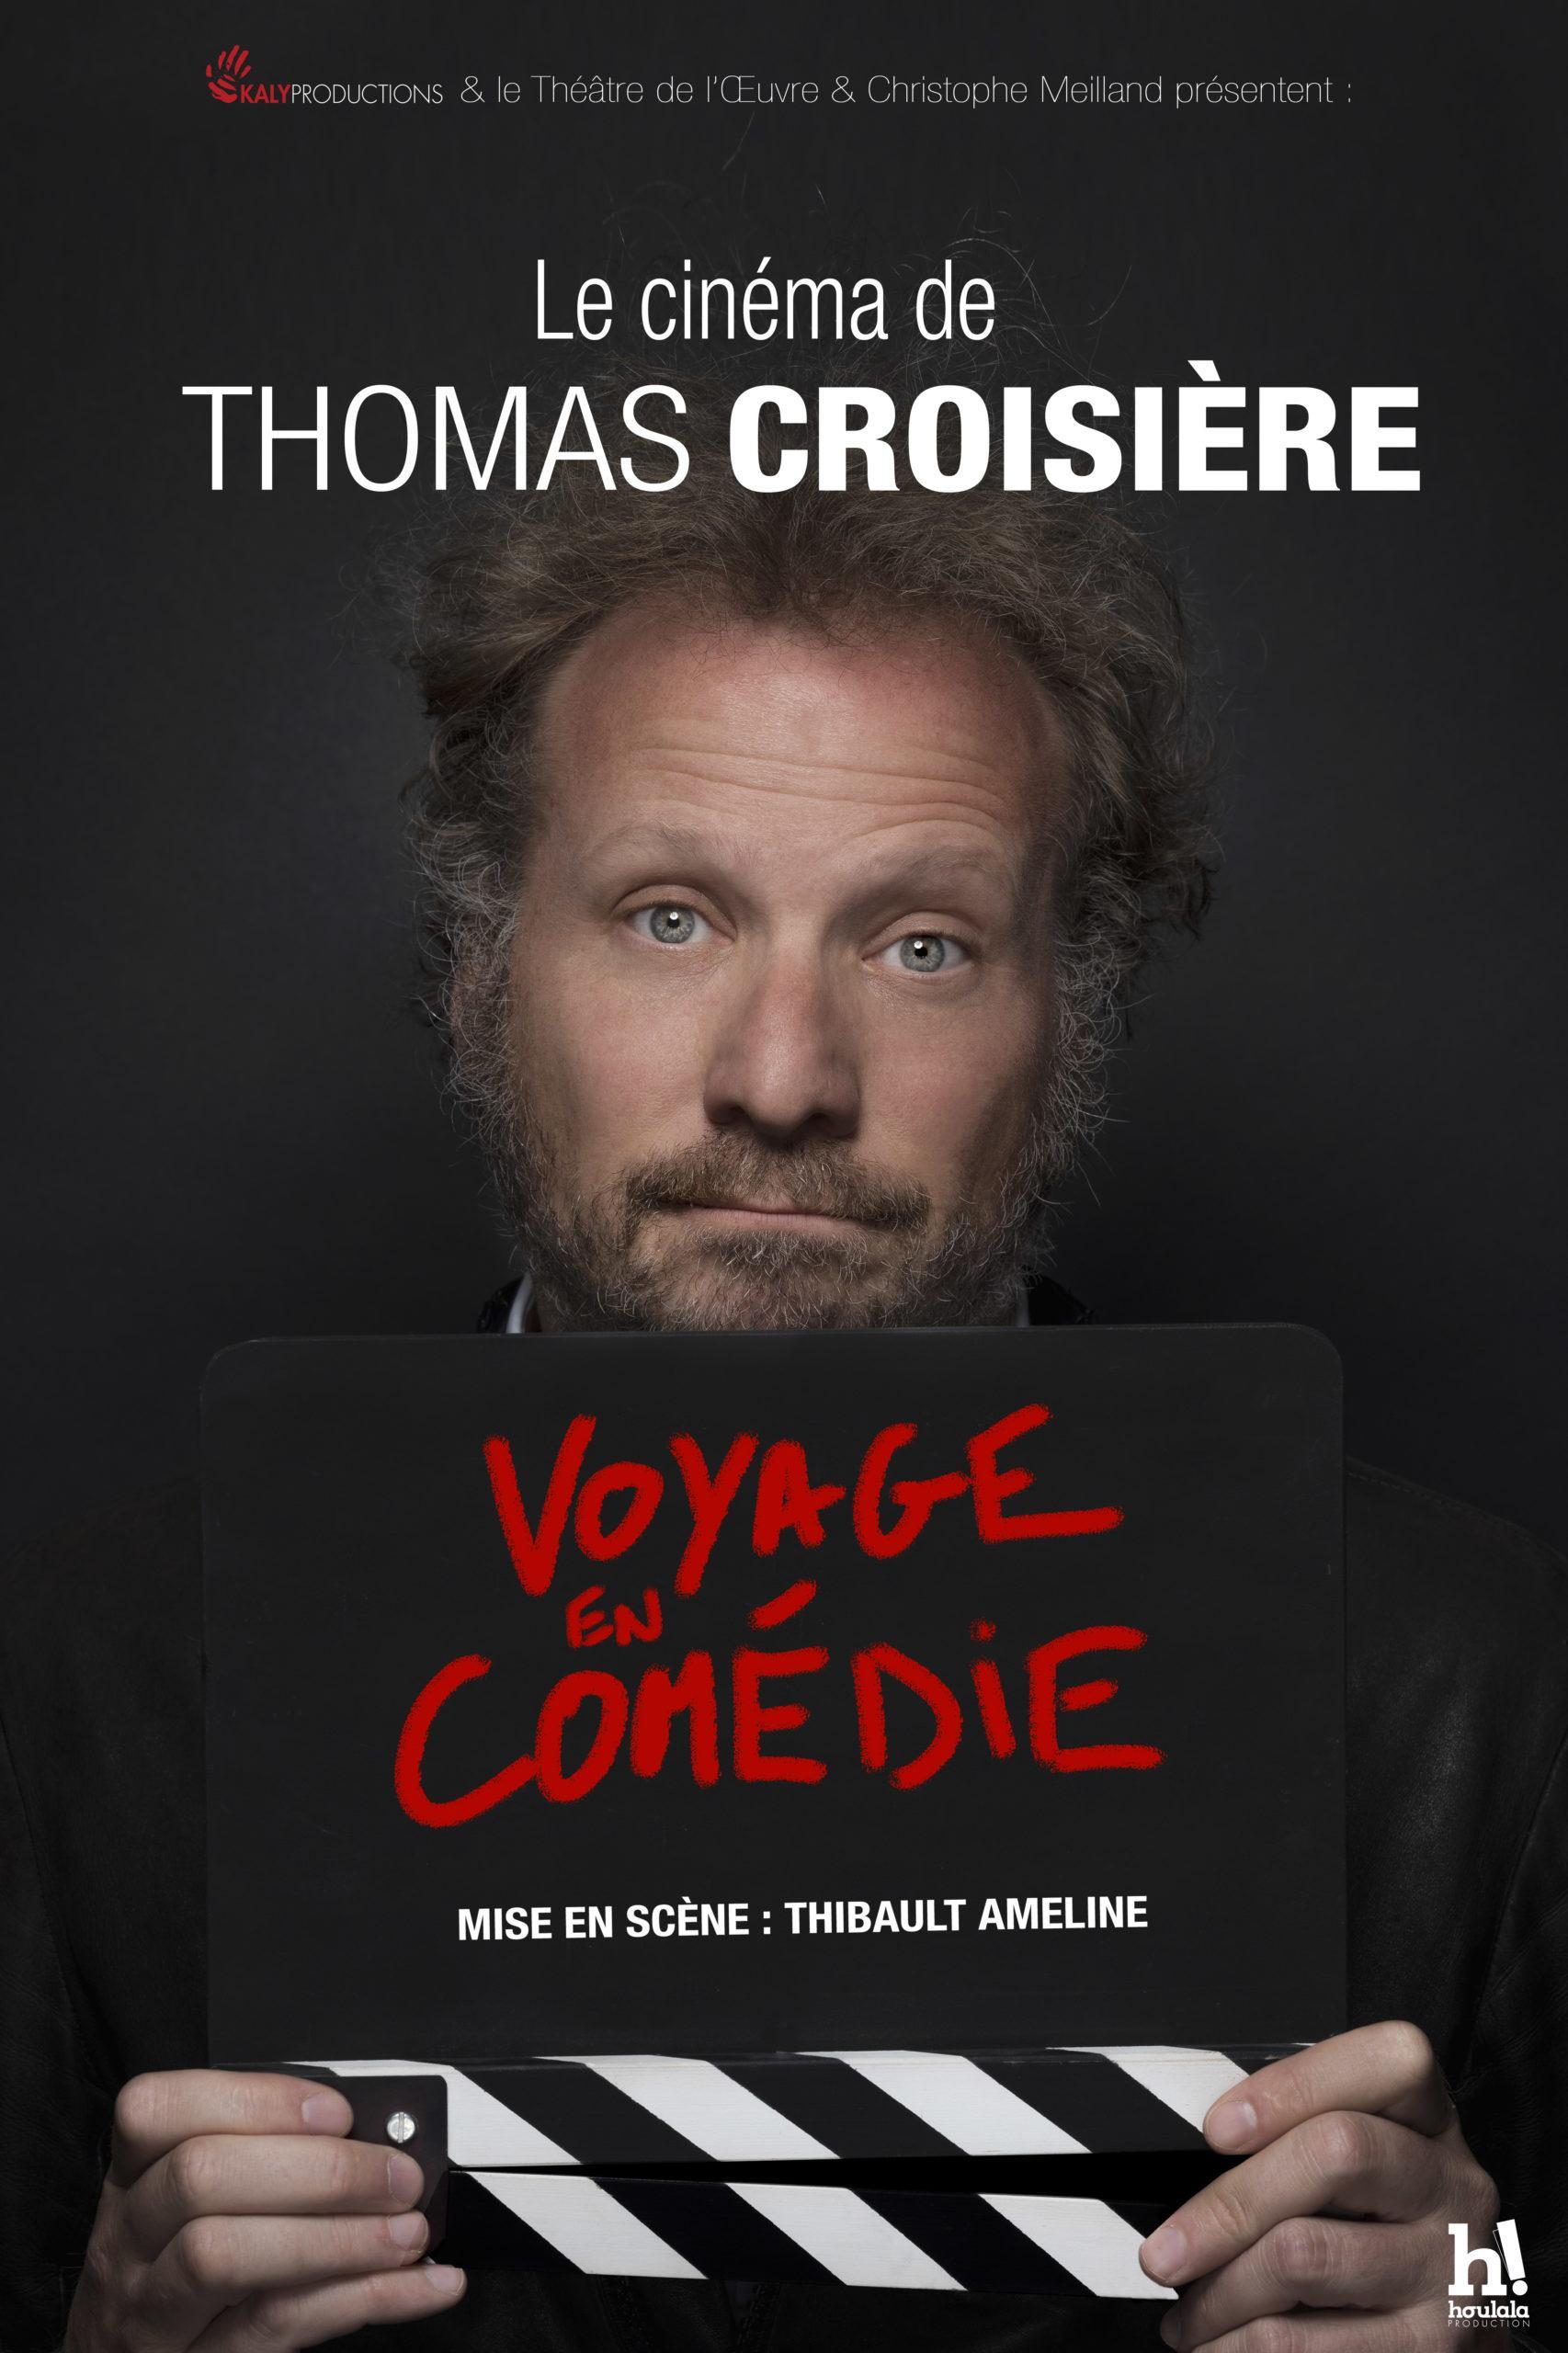 Thomas Croisière